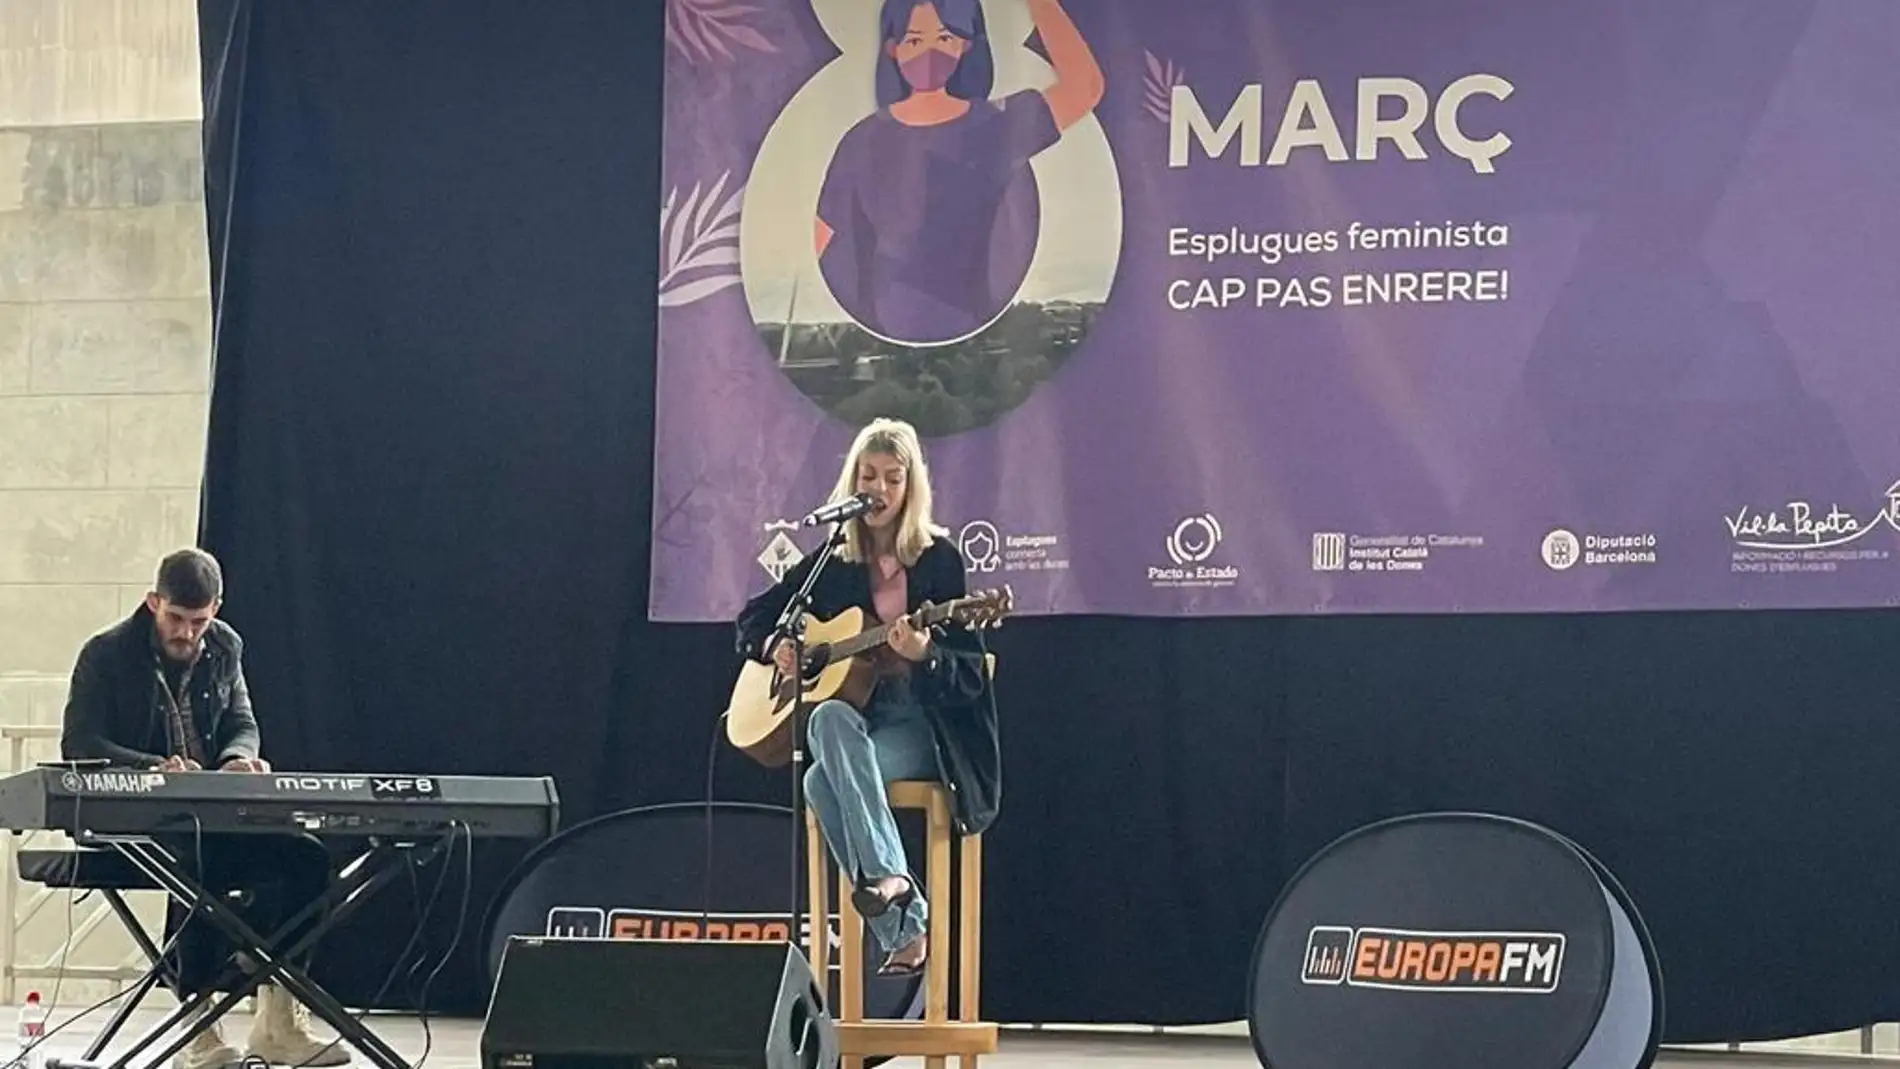 Nerea Rodríguez conquista Esplugues de Llobregat con el exclusivo showcase de Europa FM